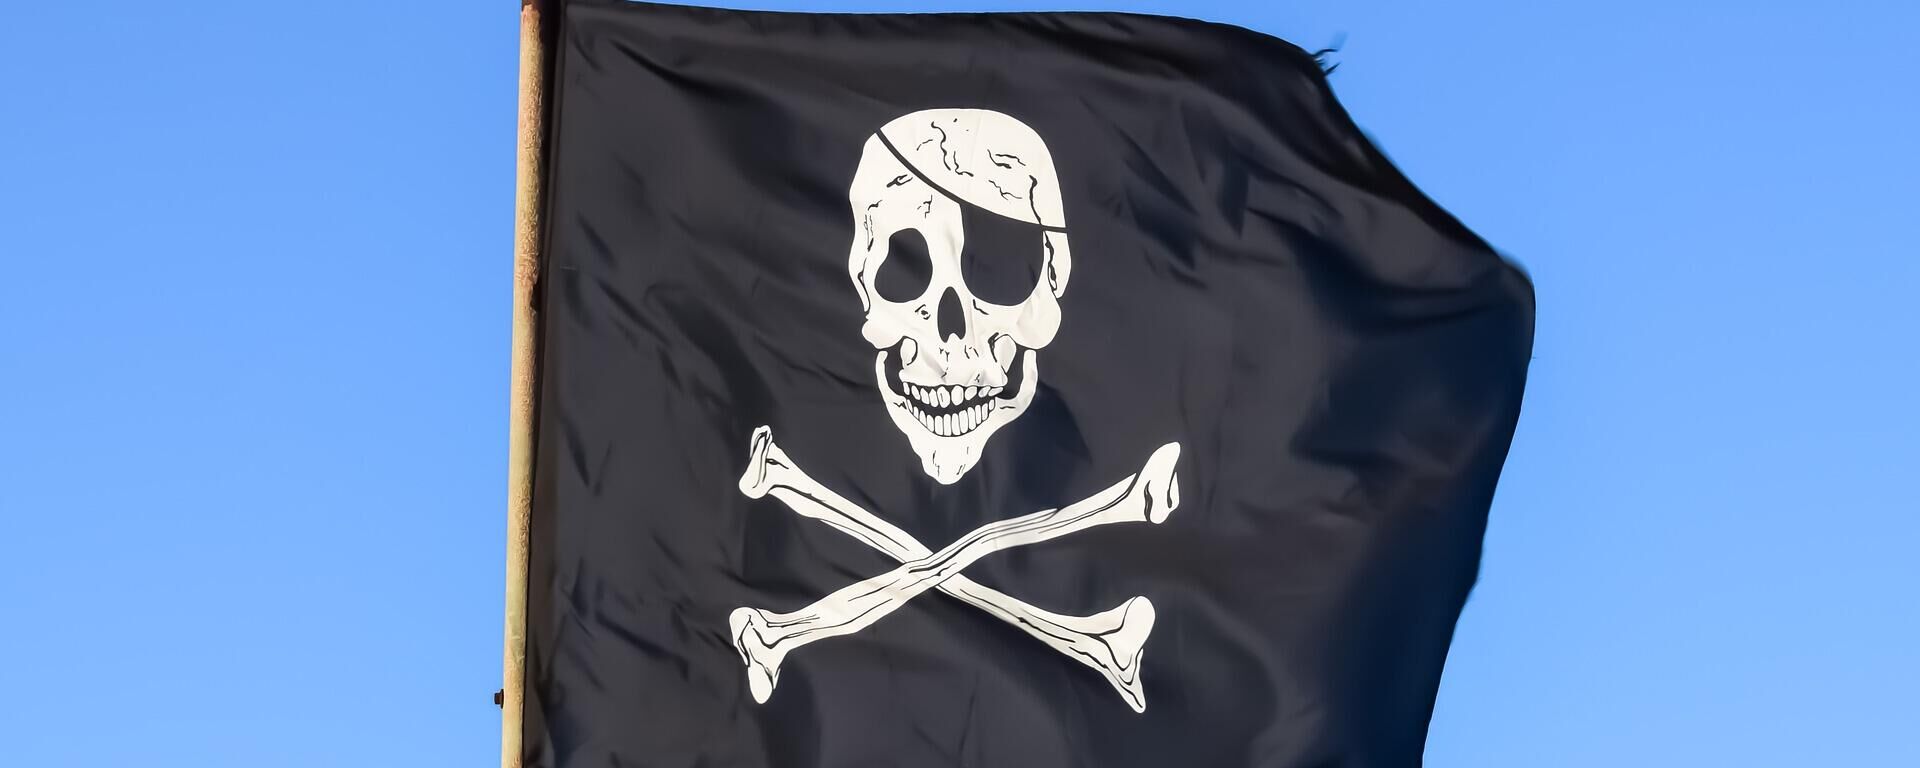 La bandera de los piratas - Sputnik Mundo, 1920, 26.10.2021